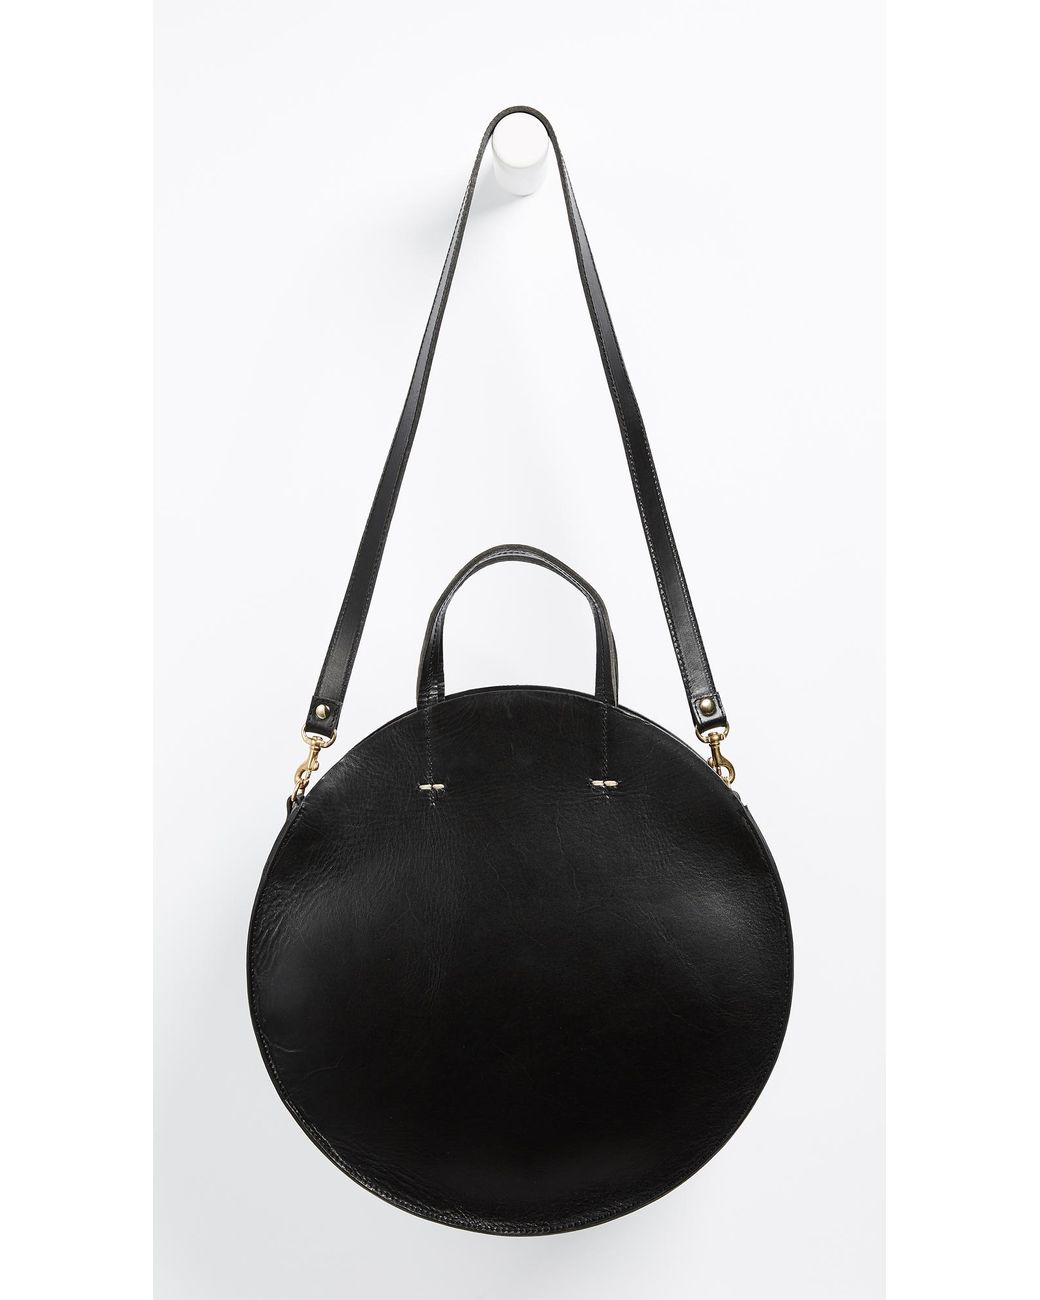 Clare V. Petit Alistair Circle Bag - Crossbody Bags, Handbags